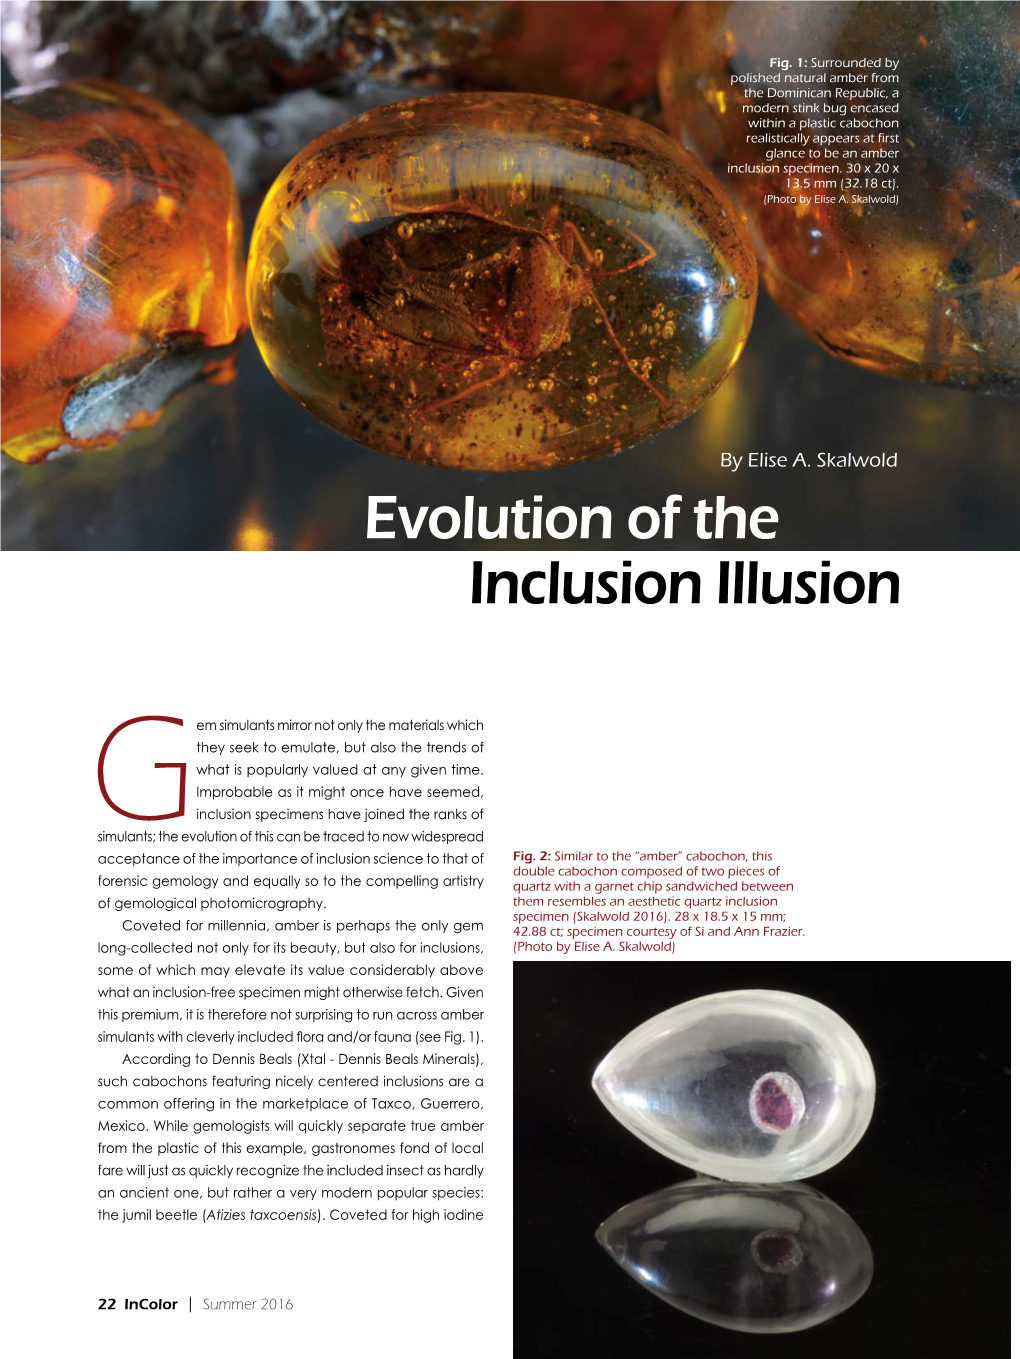 “Evolution of the Inclusion Illusion”